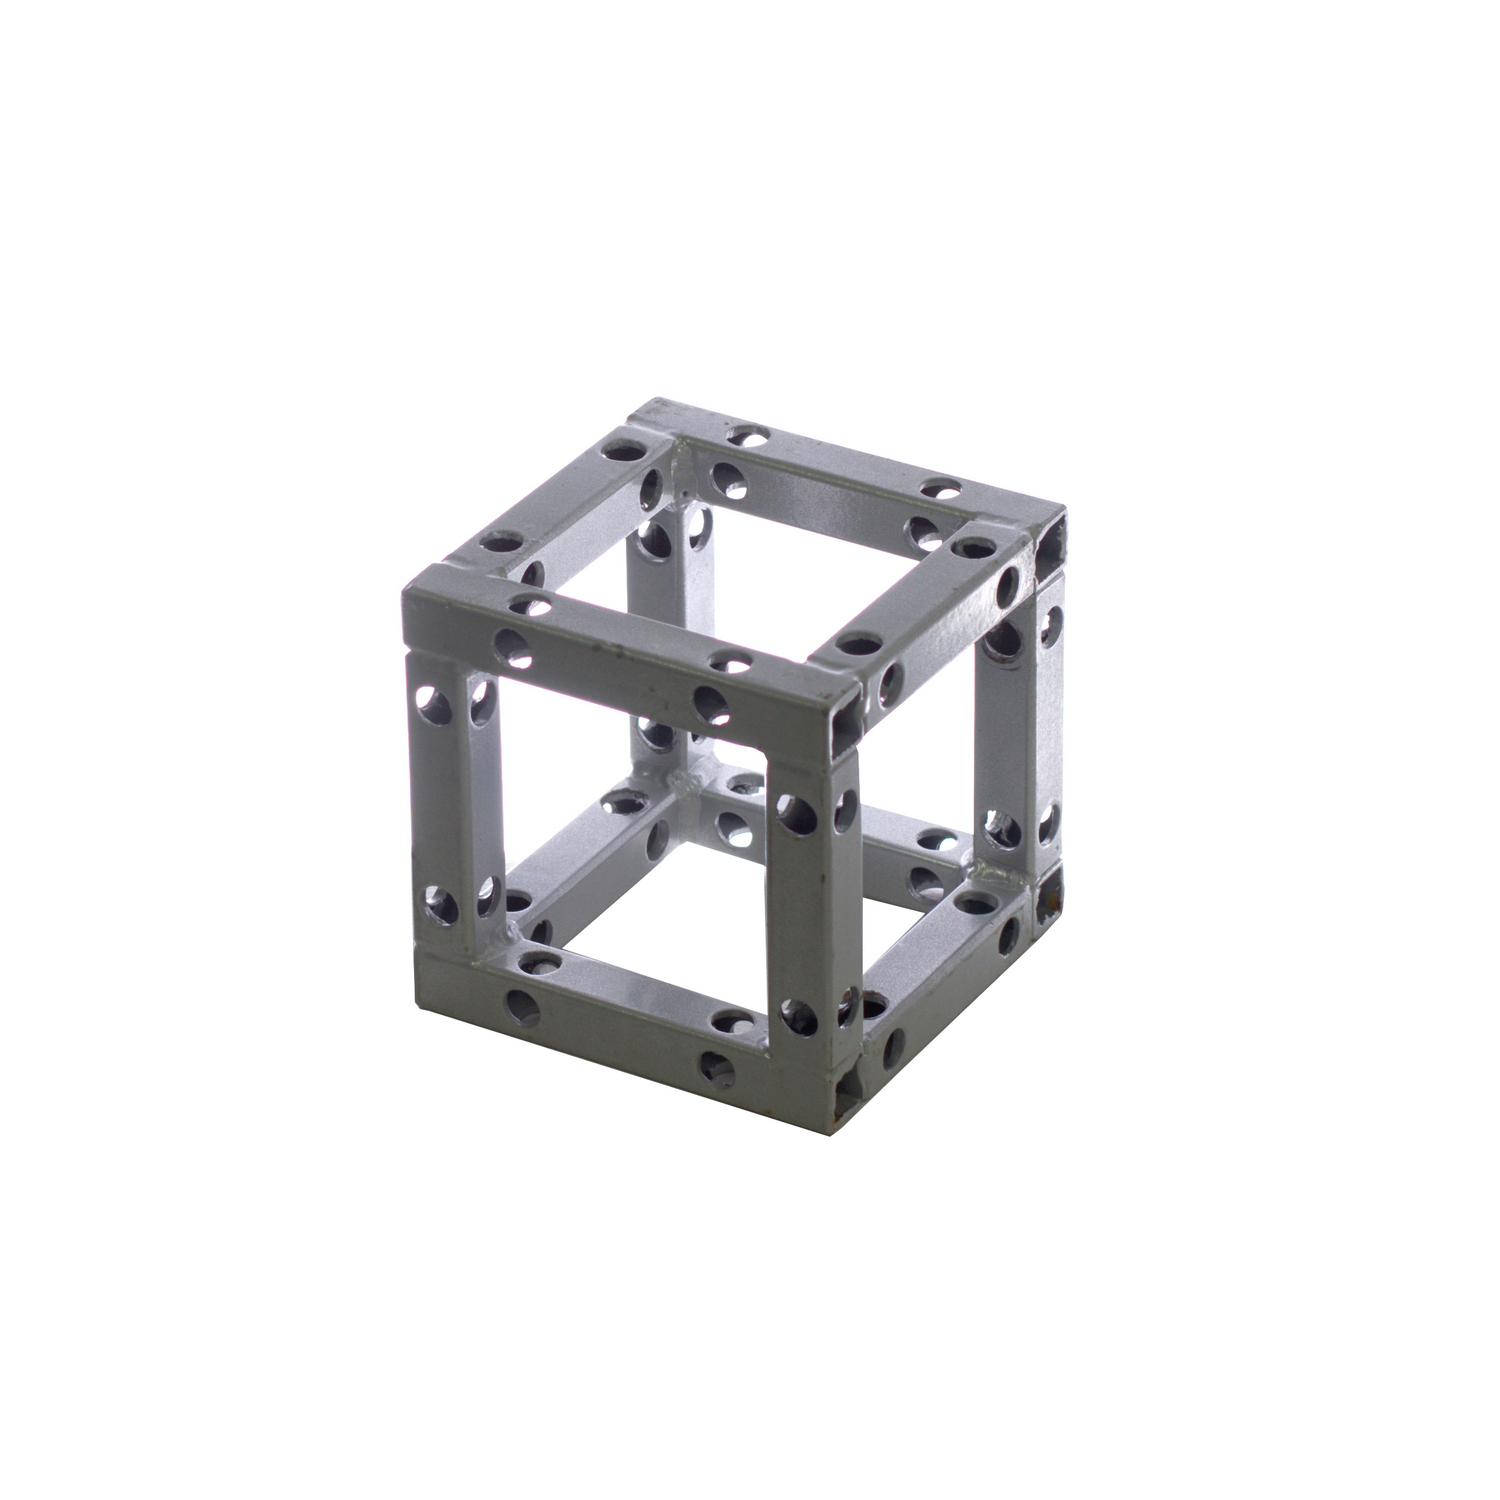 IMLIGHT Sgub-100 - ферма квадратная стальная куб 100х100х100